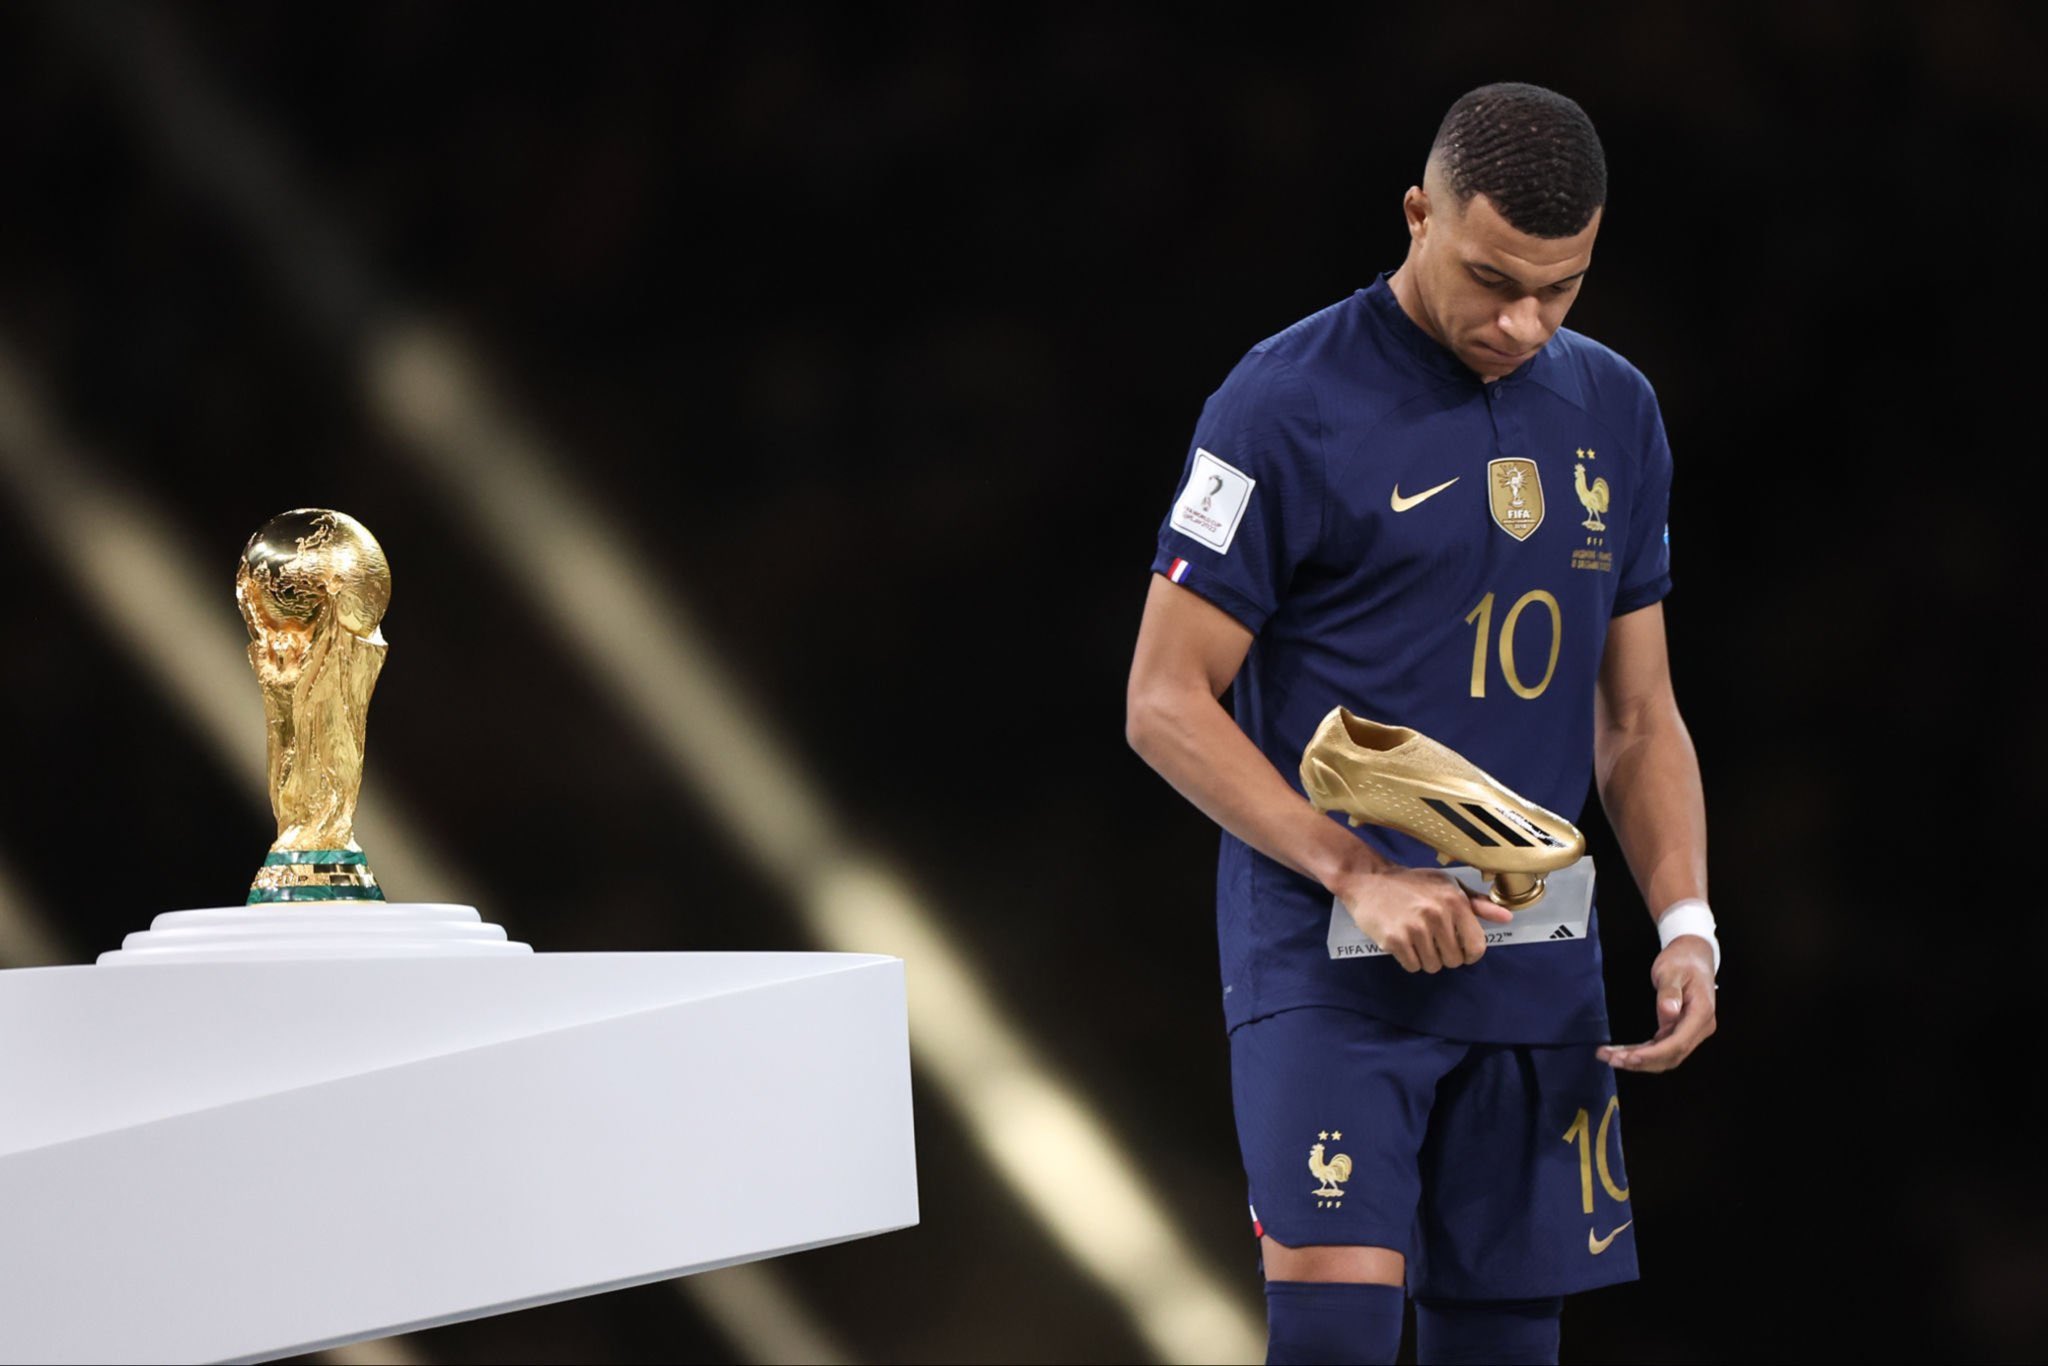 Con esta fotografía, Mbappé prometió revancha tras la derrota de Francia ante Argentina, por la final del mundial. Foto Twitter KMbappe.